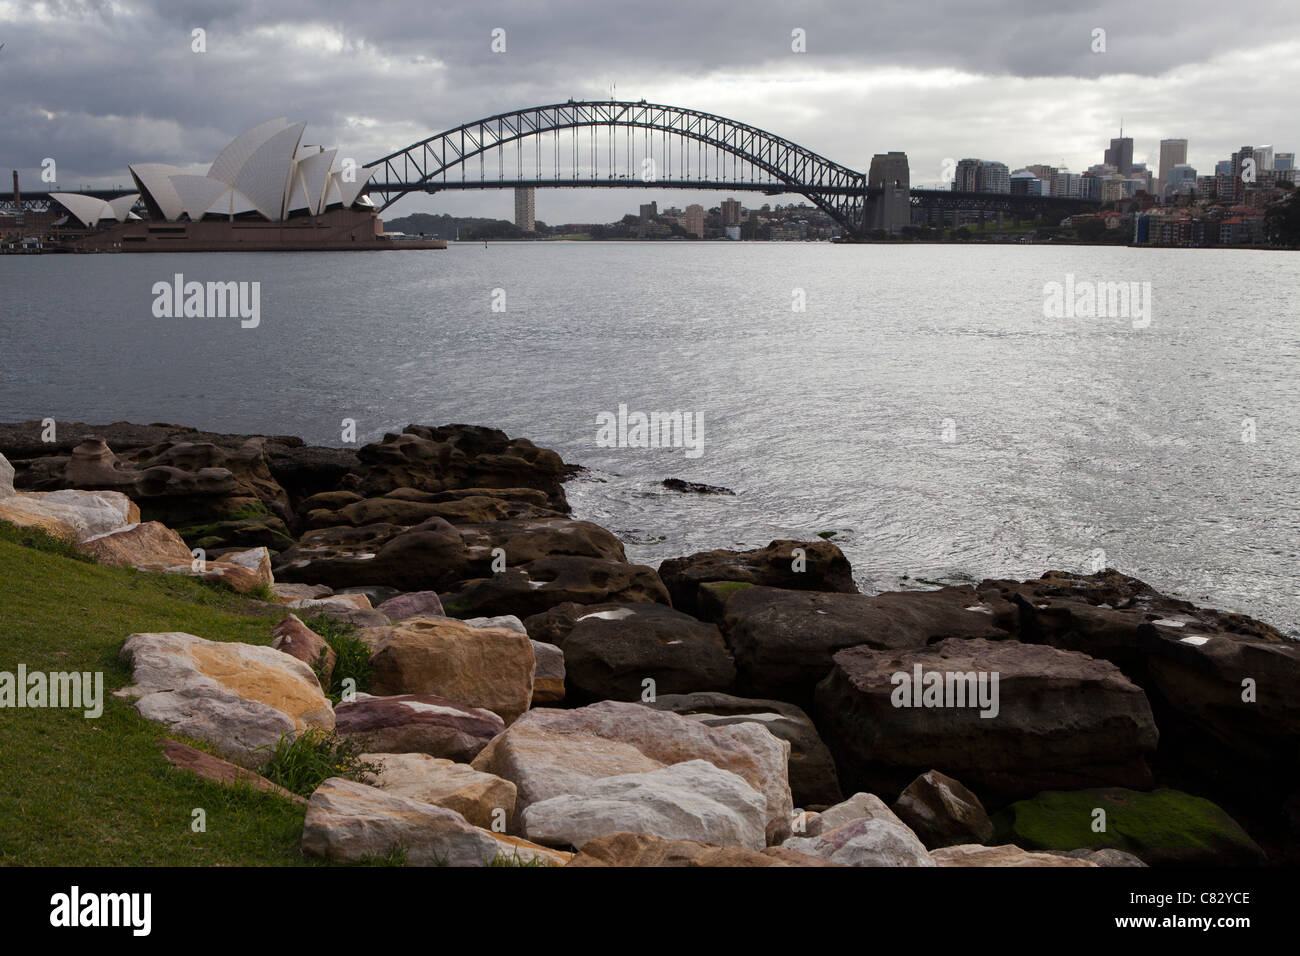 Opéra de Sydney et le Harbour Bridge v iewed à partir du domaine, Sydney, Australie. Banque D'Images